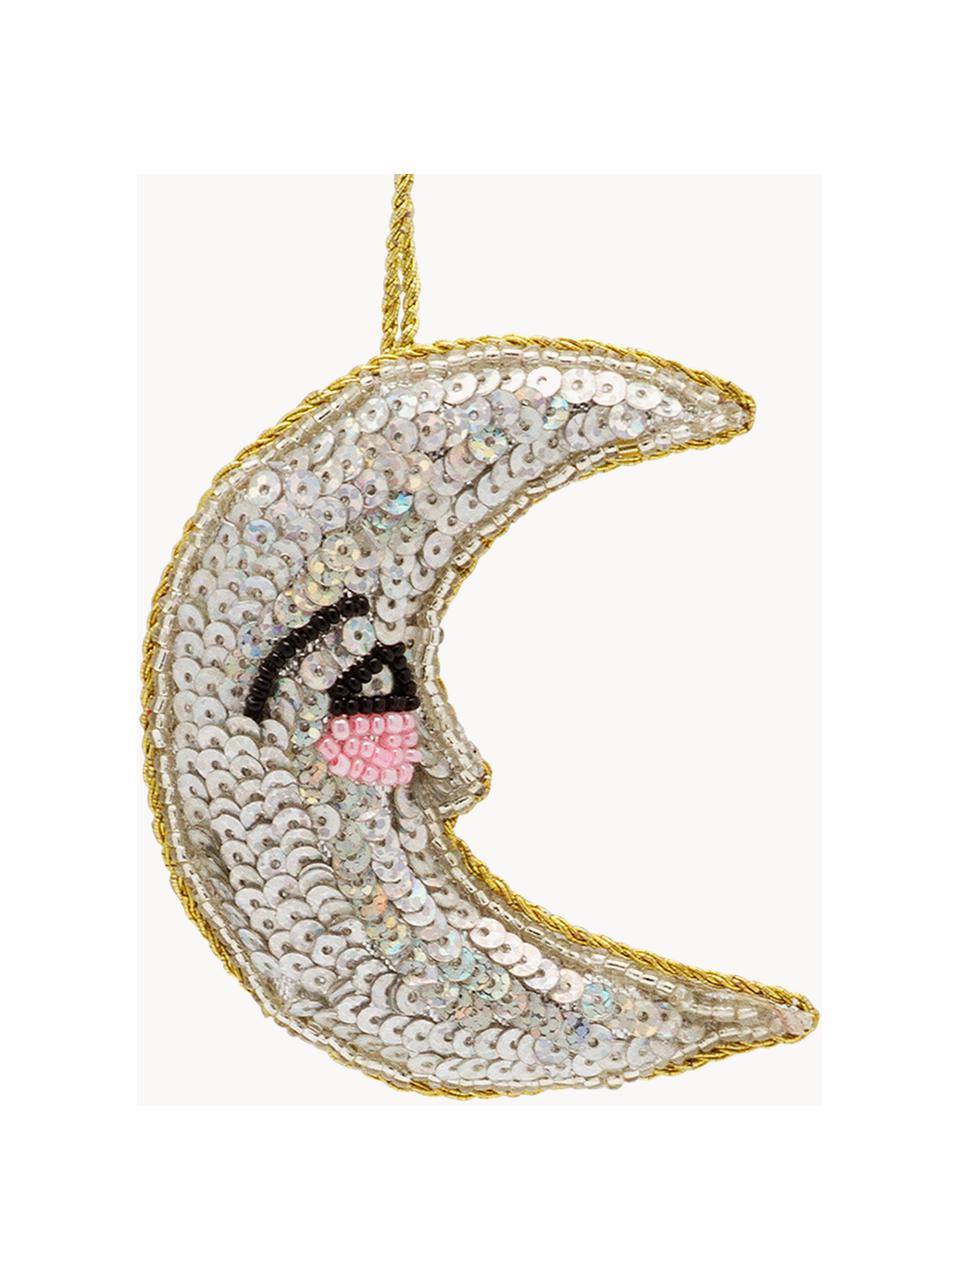 Baumanhänger Glitter Moon, 2 Stück, Kunstfaser, Silberfarben, Goldfarben, B 4 x H 7 cm